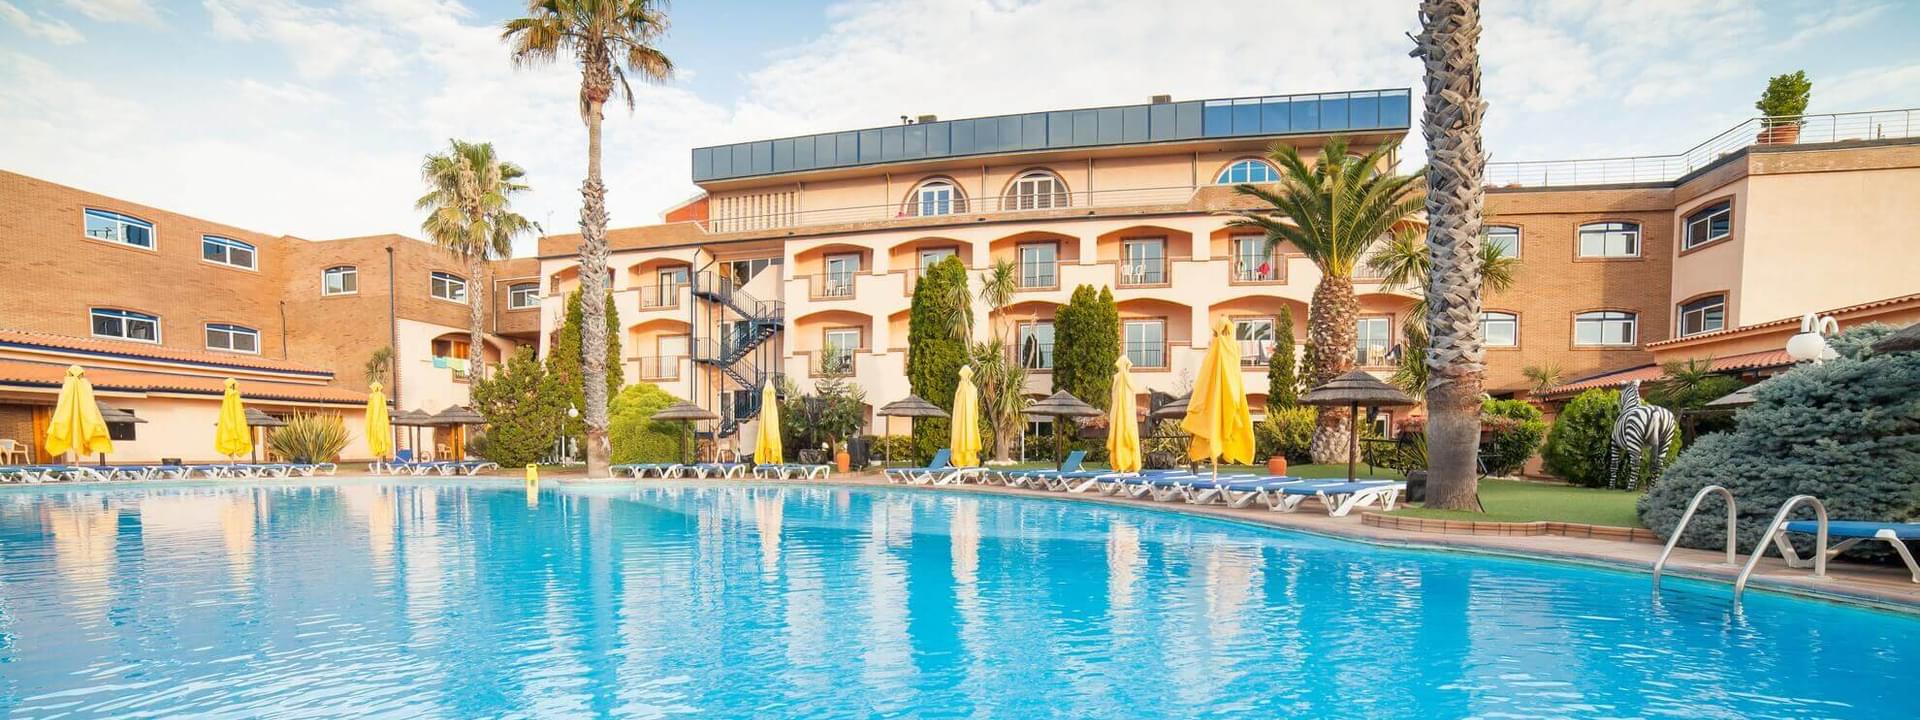 Hotel Resort “O Alambique de Ouro”